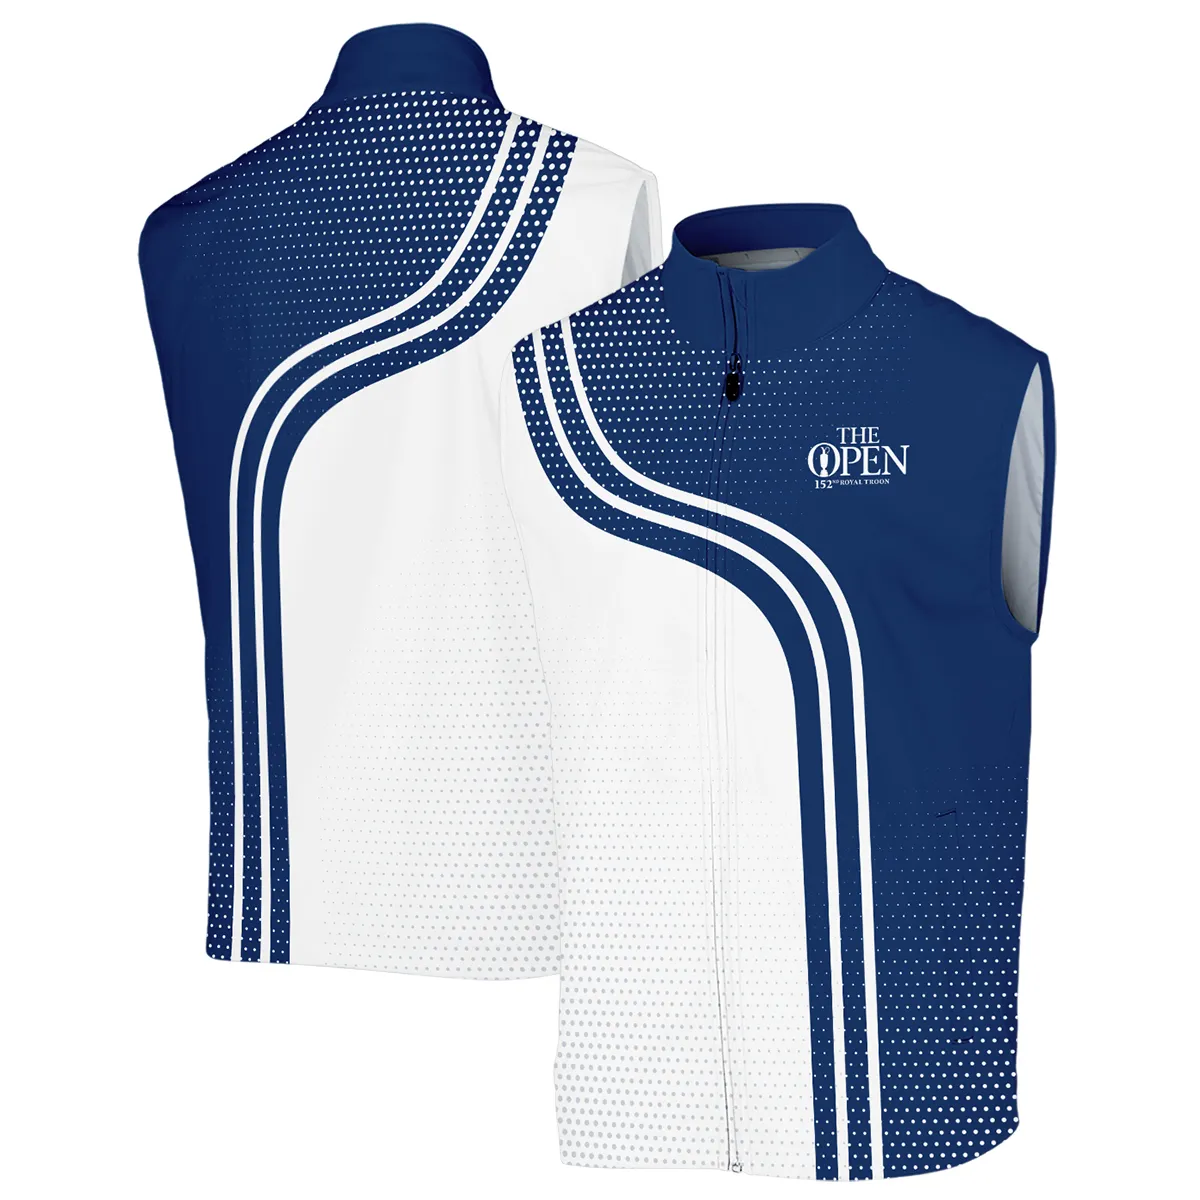 Golf Blue Mix White Sport 152nd Open Championship Pinehurst Callaway Zipper Polo Shirt All Over Prints QTTOP1806A1CLWZPL